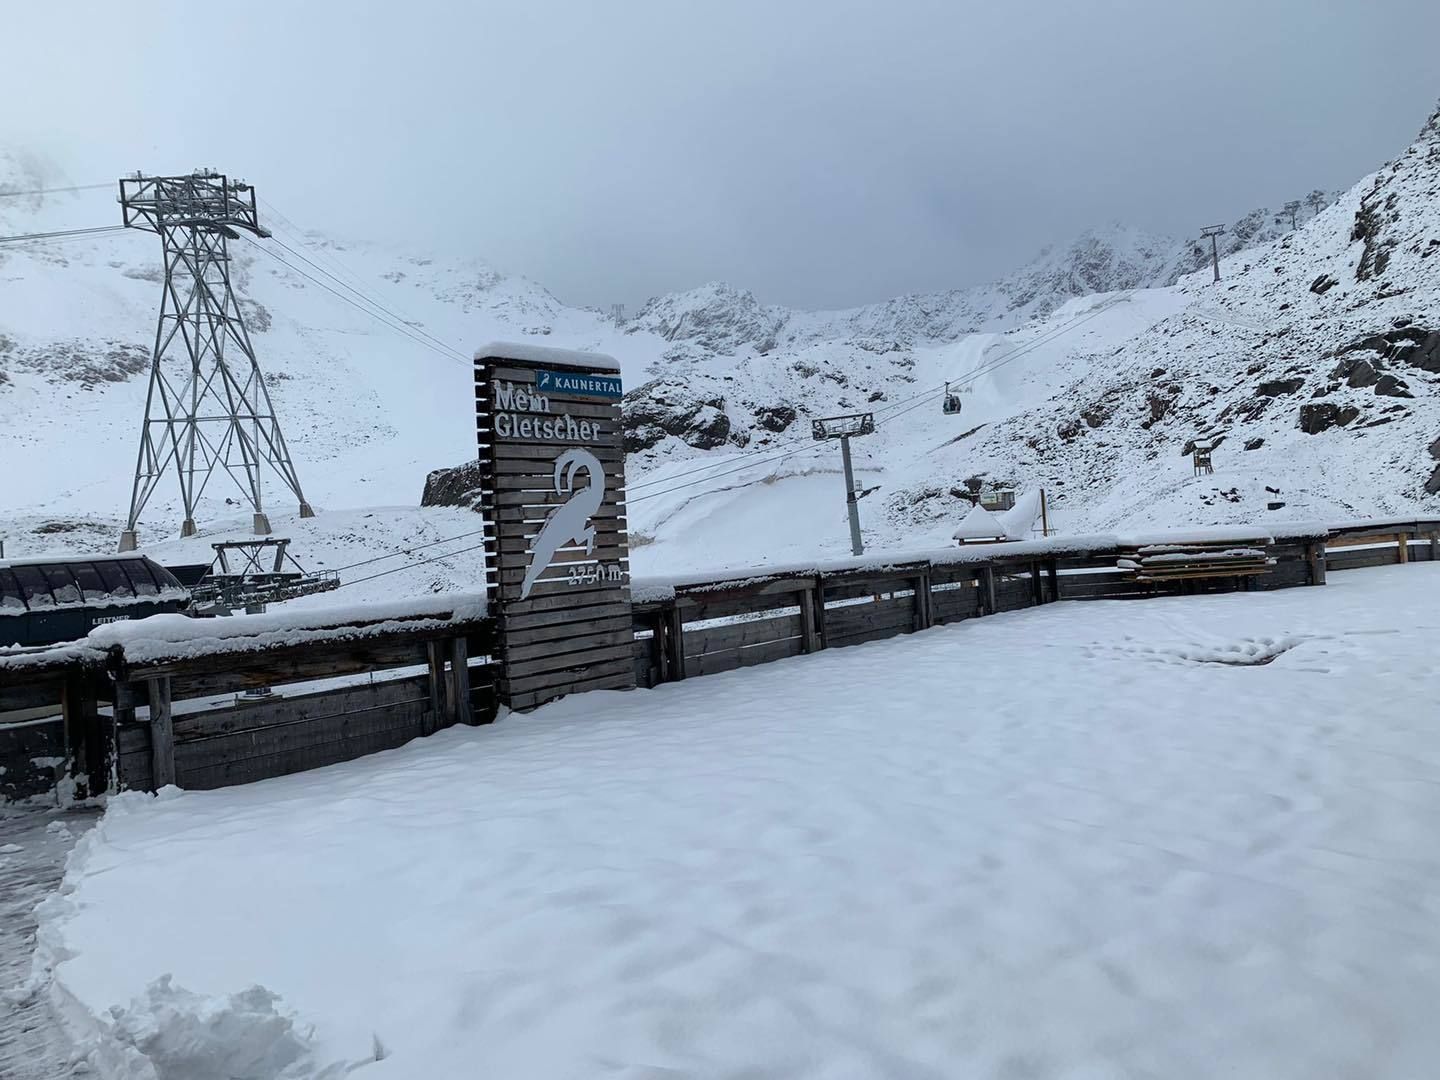 Kaunertaler Glacier. The lifts will open on the 25th of September. (FB Kaunertaler Gletscher)